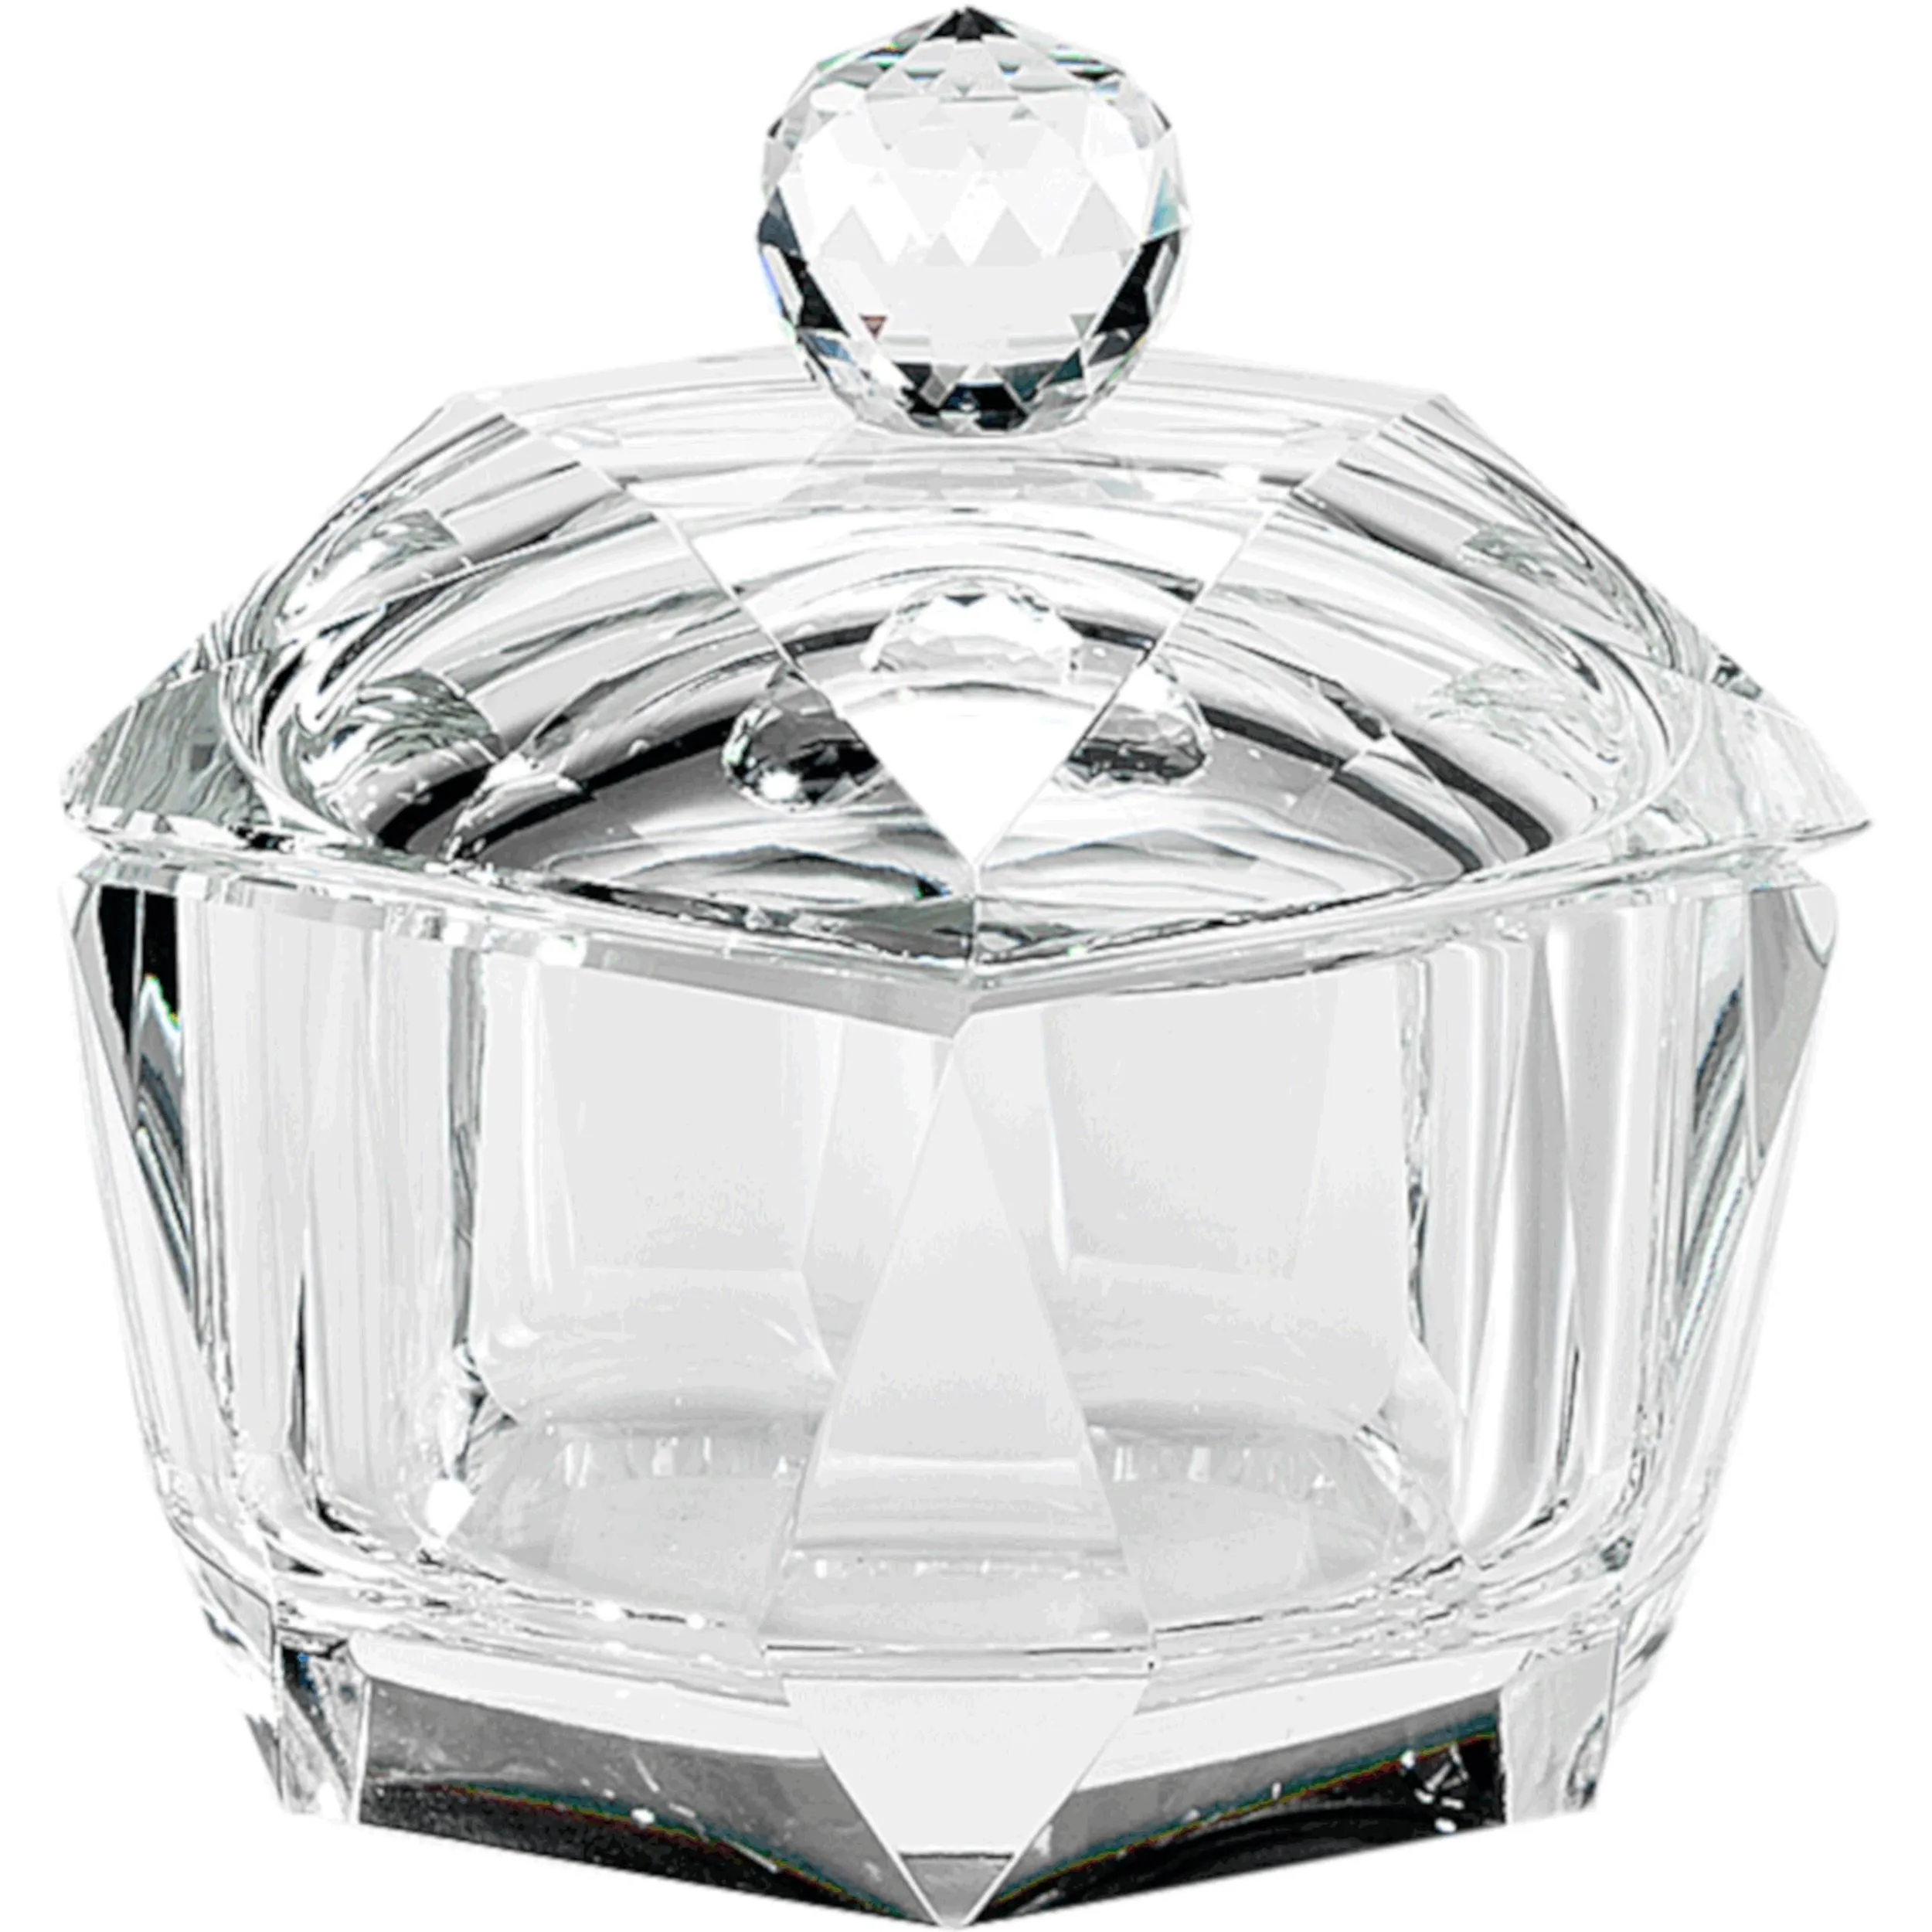 Scatola in Cristallo K9 Diamante 8,5x8,5xh8 cm in scatola regalo , per uso bomboniera matrimonio comunione cresima